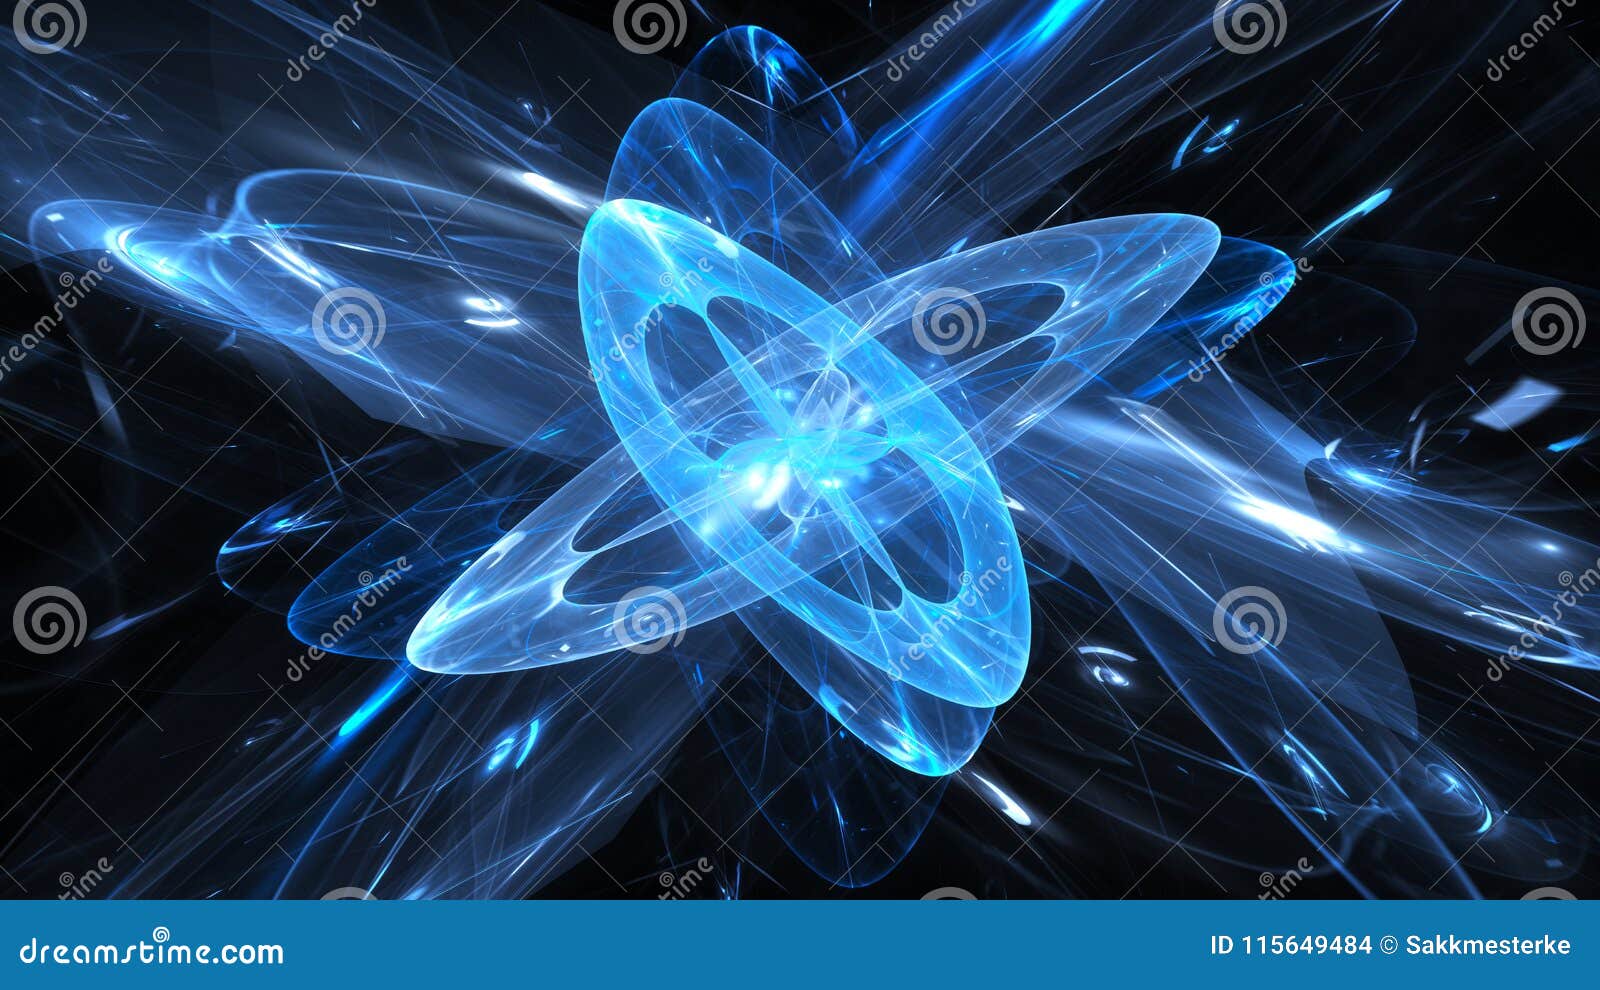 blue glowing magical quantum in space